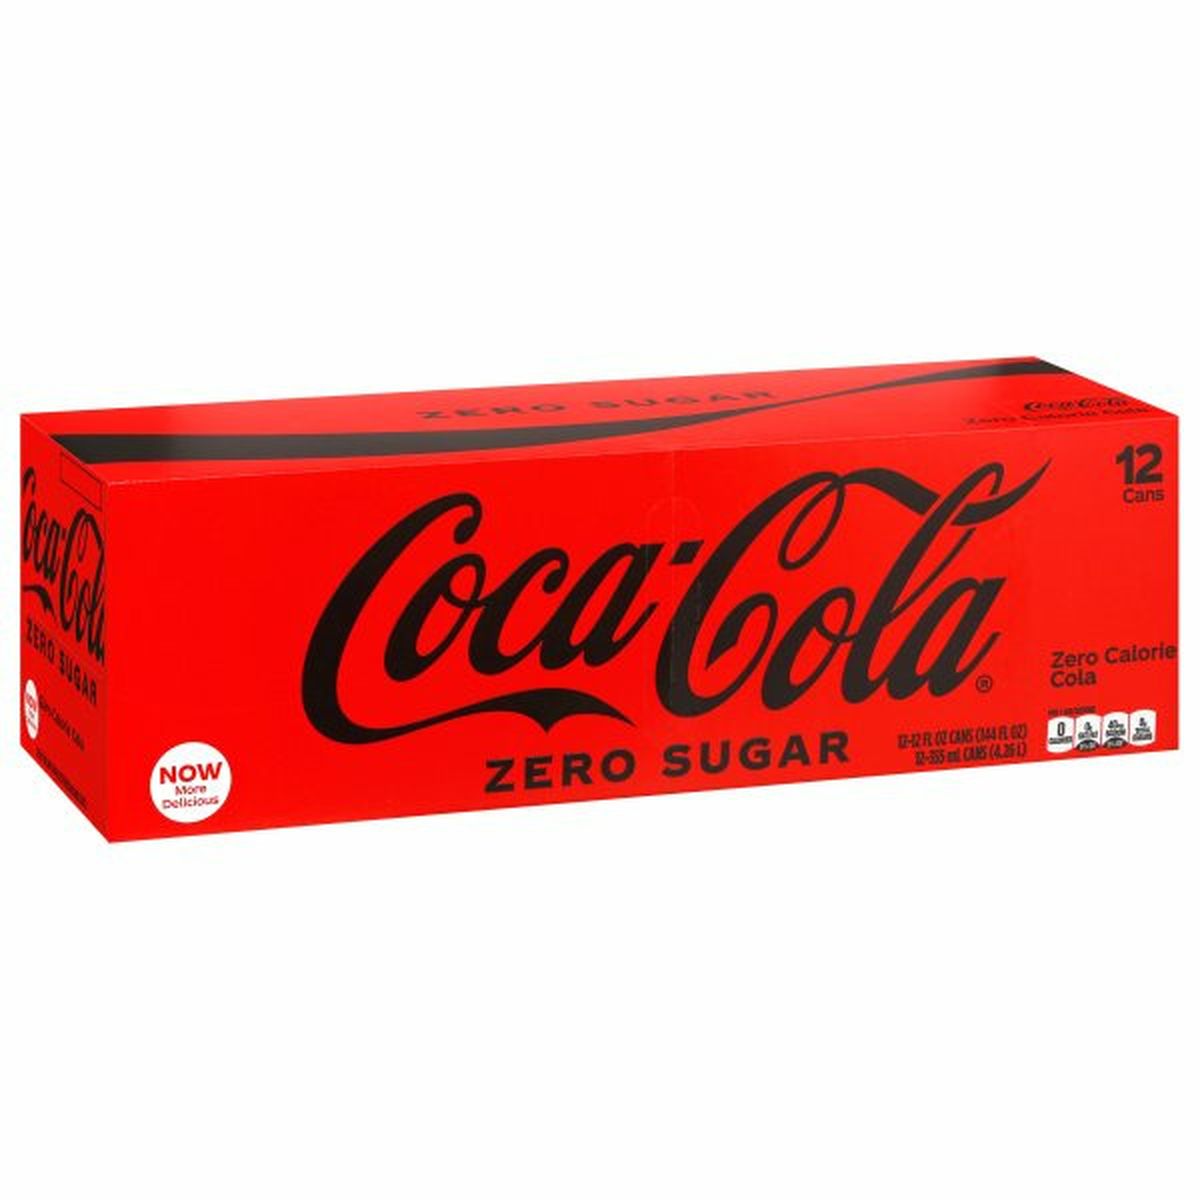 Calories in Coca-Cola Cola, Zero Sugar, Fridge Pack